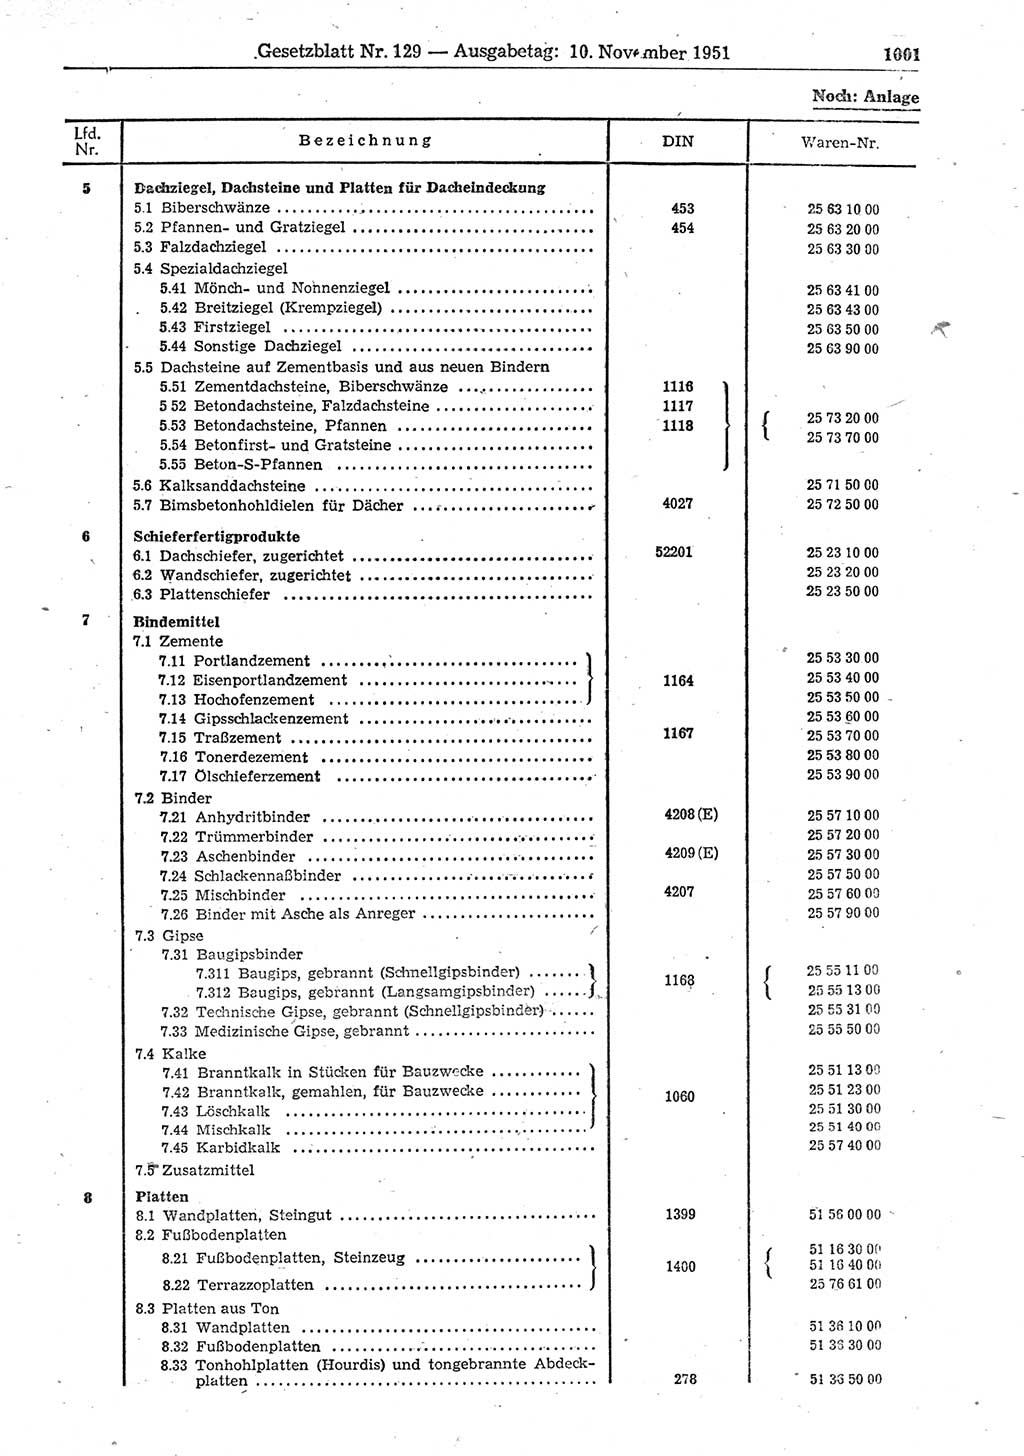 Gesetzblatt (GBl.) der Deutschen Demokratischen Republik (DDR) 1951, Seite 1001 (GBl. DDR 1951, S. 1001)